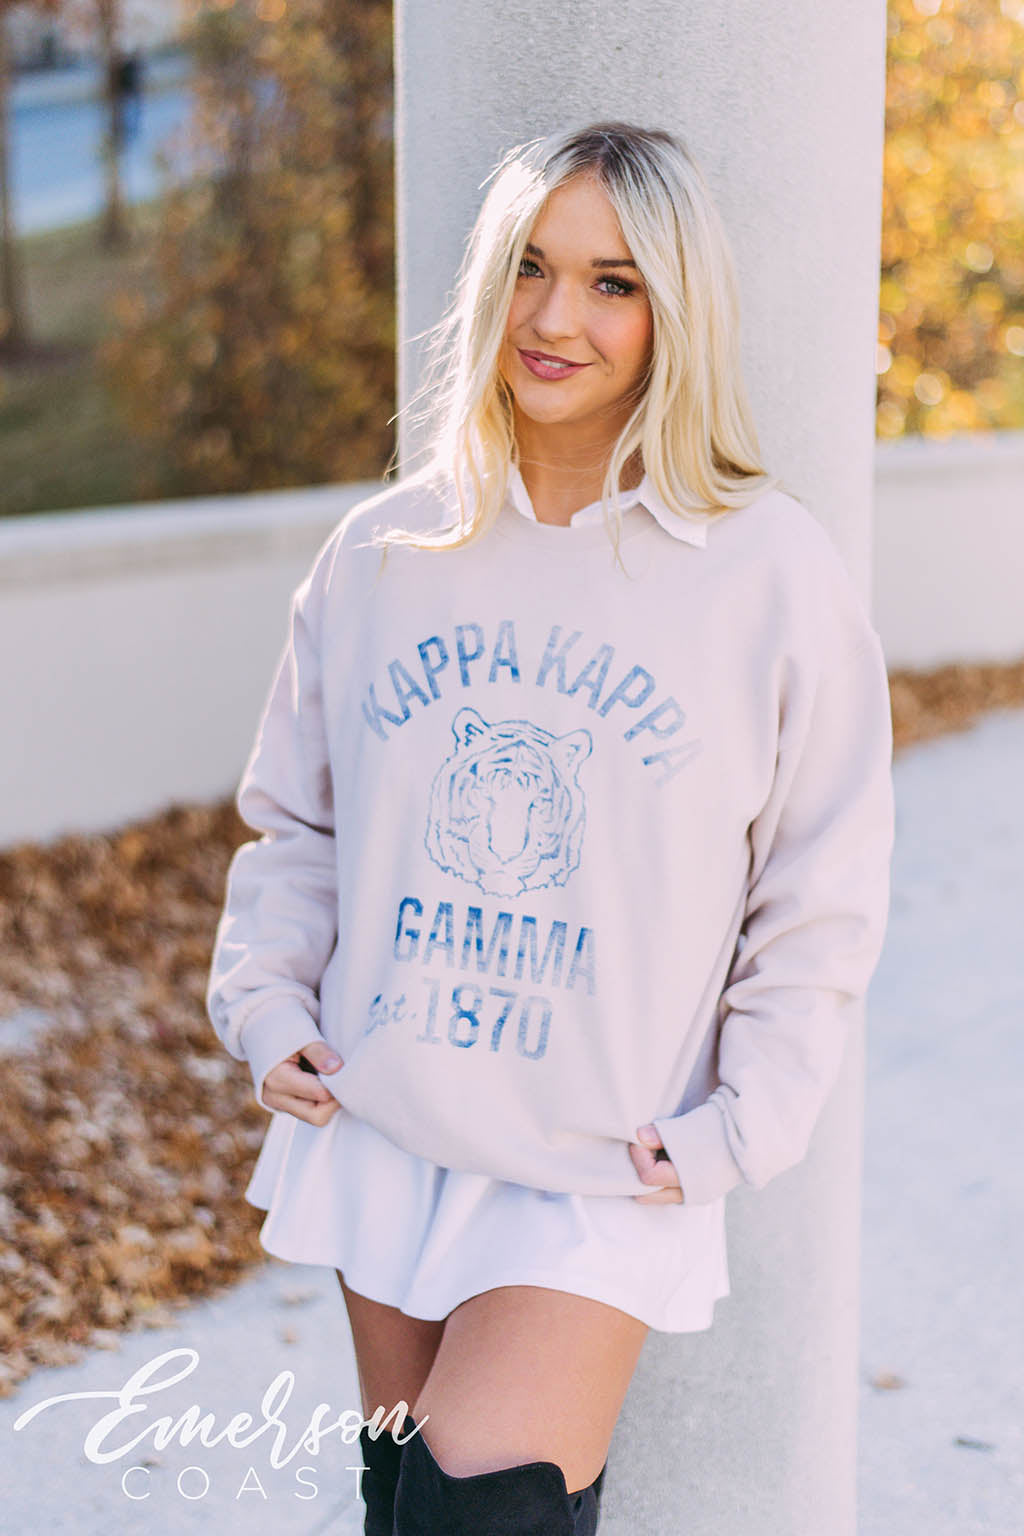 Kappa Kappa Gamma Vintage Collegiate Sweatshirt